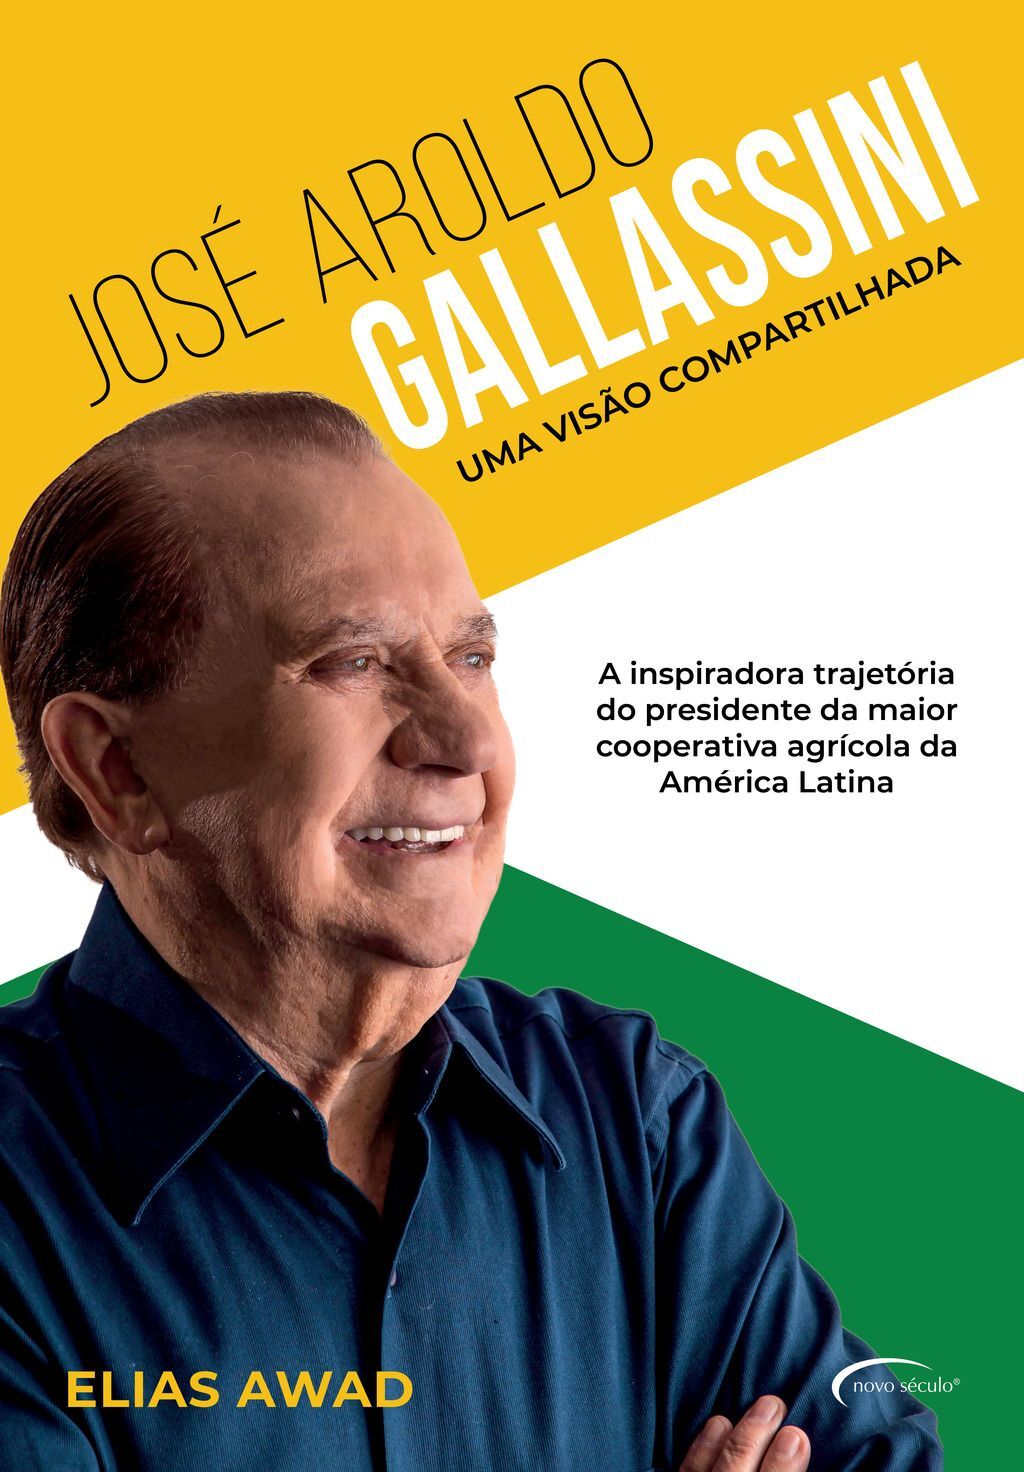 José Aroldo Galassini